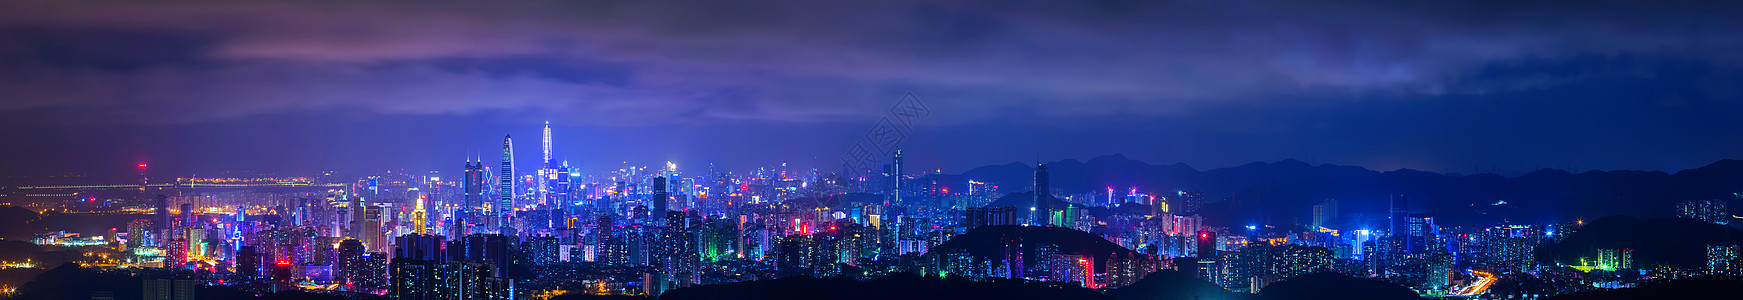 地王大厦深圳城市夜景背景